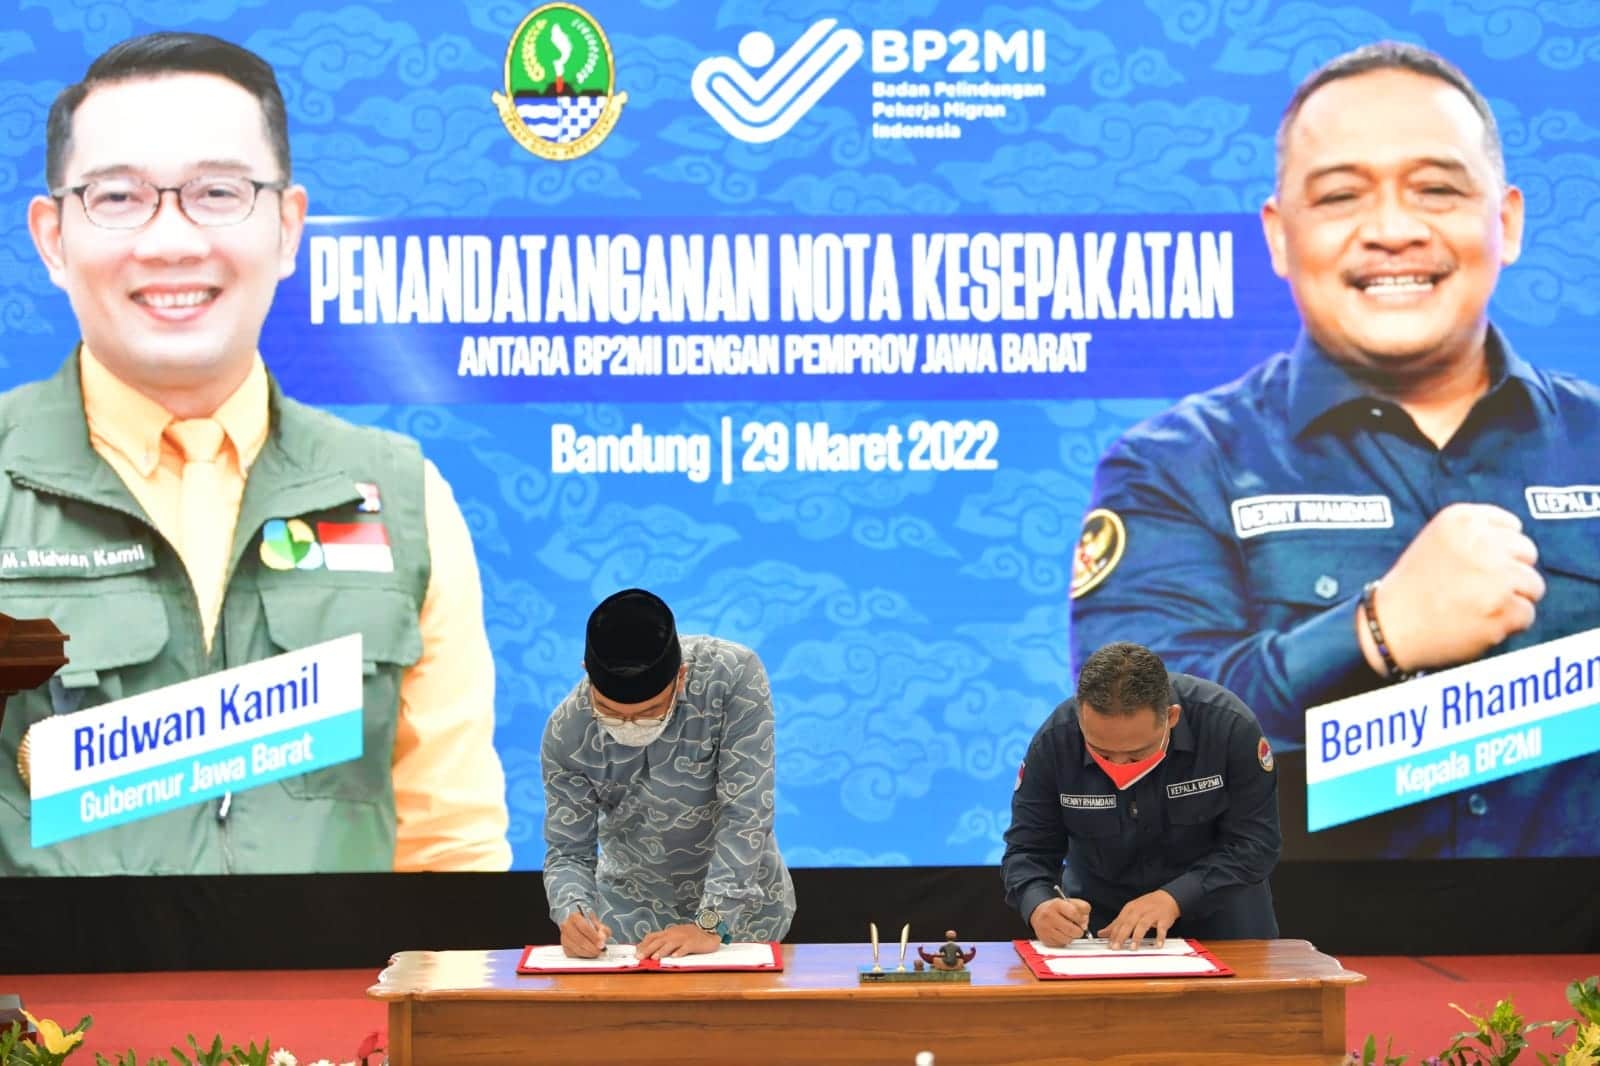 Pemeritah Provinsi Jawa Barat Berkolaborasi dengan BP2MI Perkuat Perlindungan kepada PMI